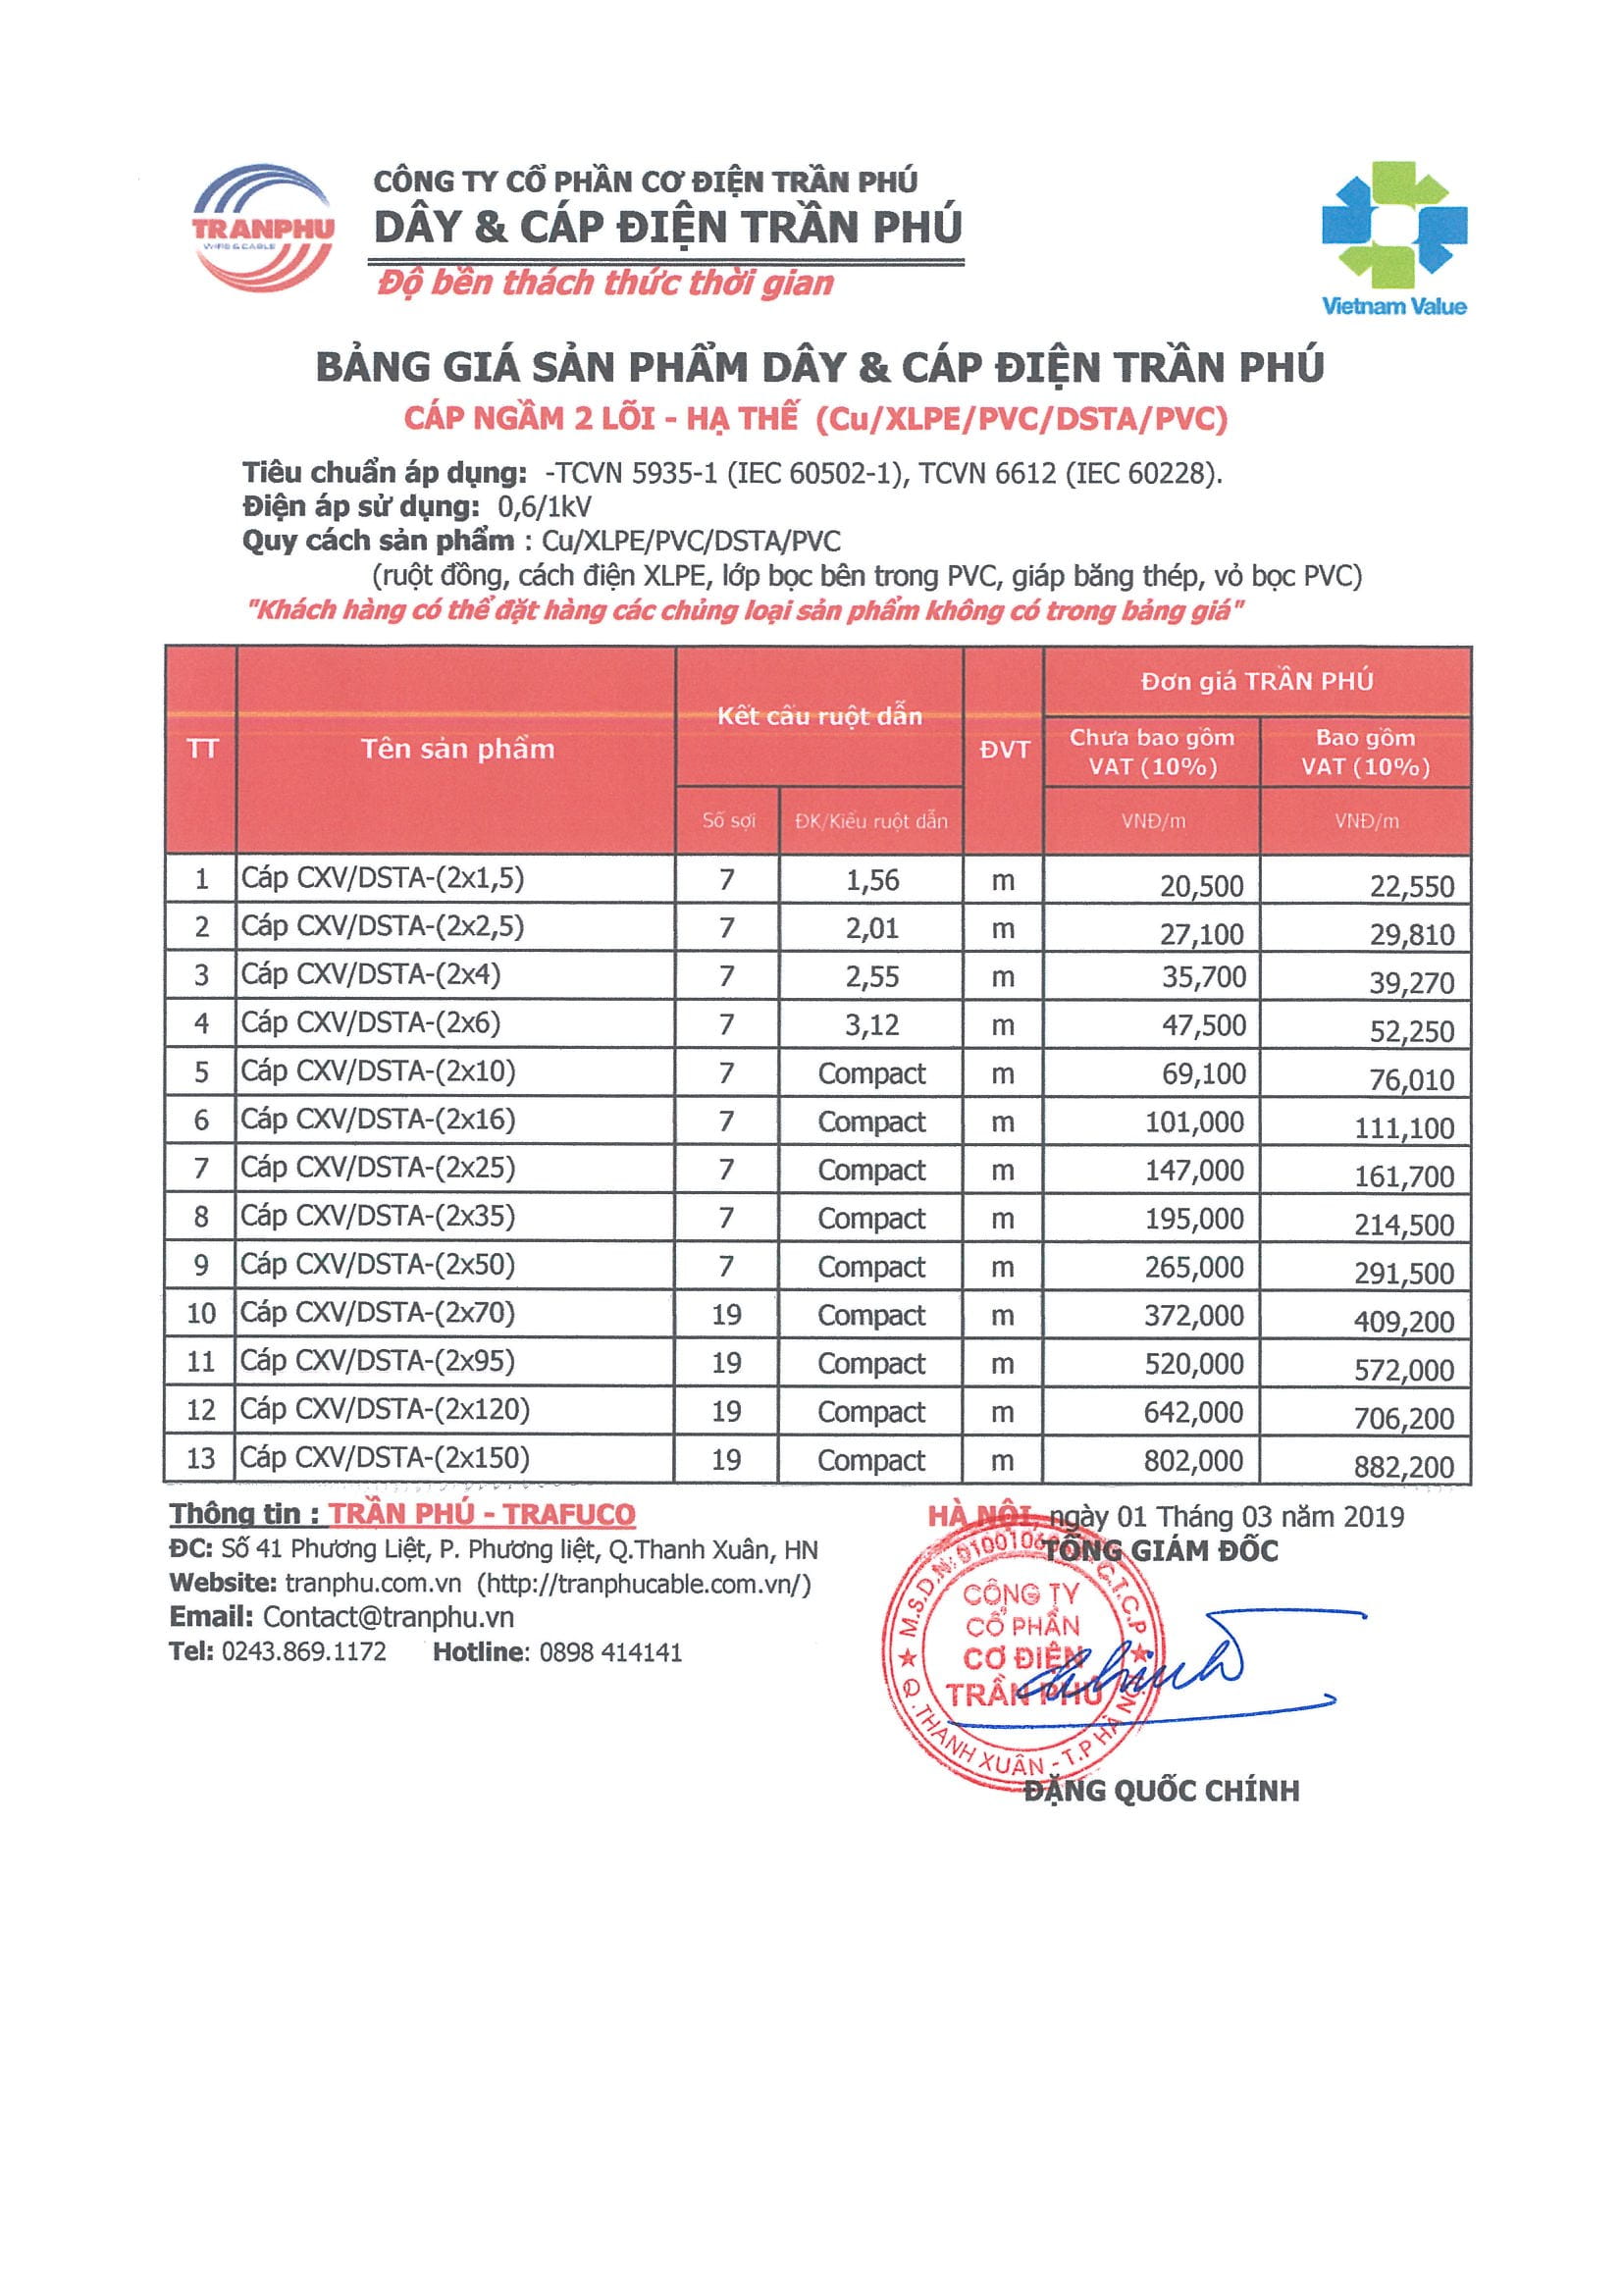 bảng giá Trần Phú 2019 14